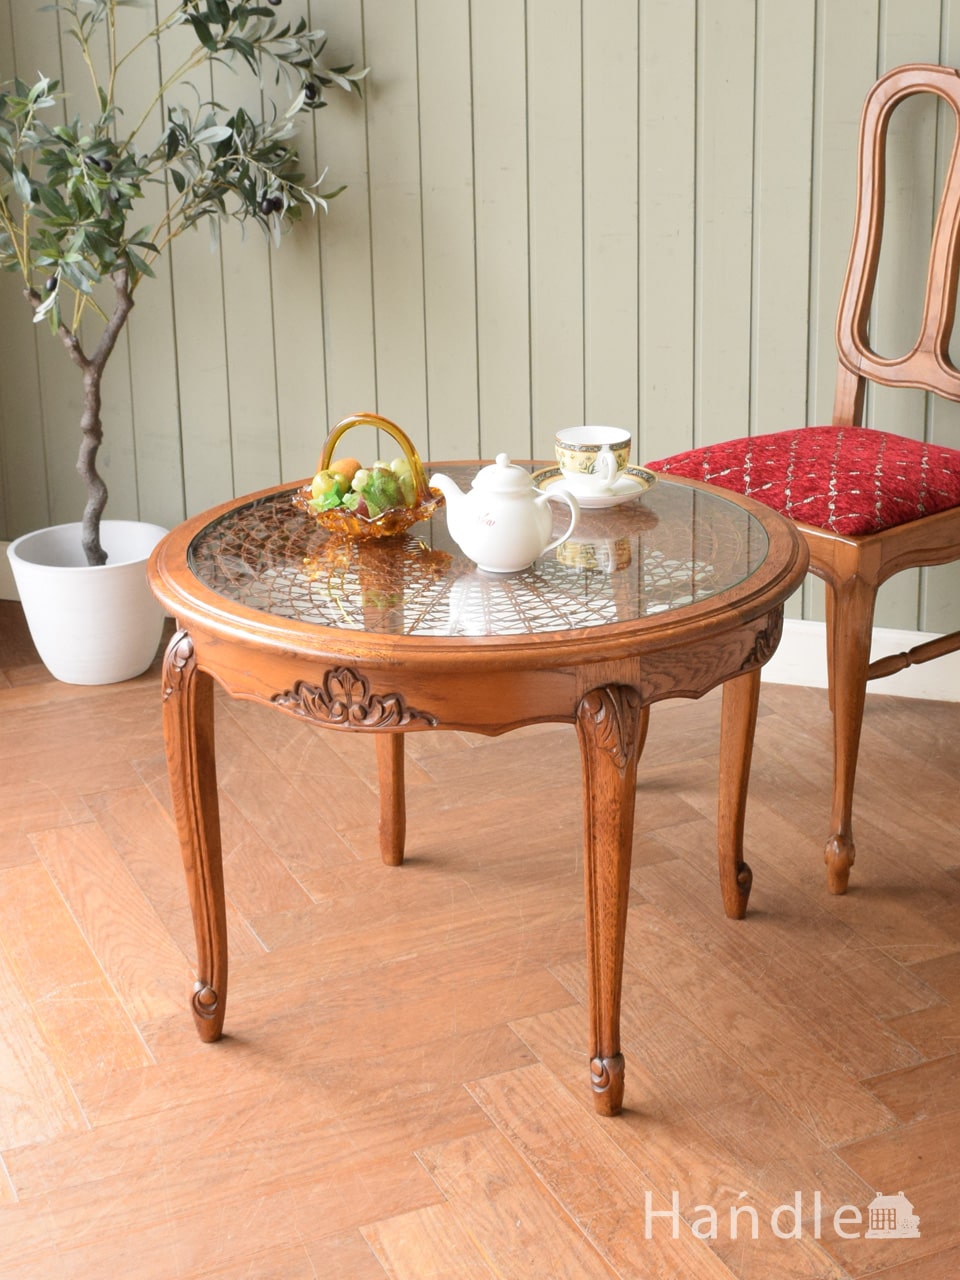 フランスの優雅なアンティークテーブル、網目がキレイな丸い形のコーヒーテーブル